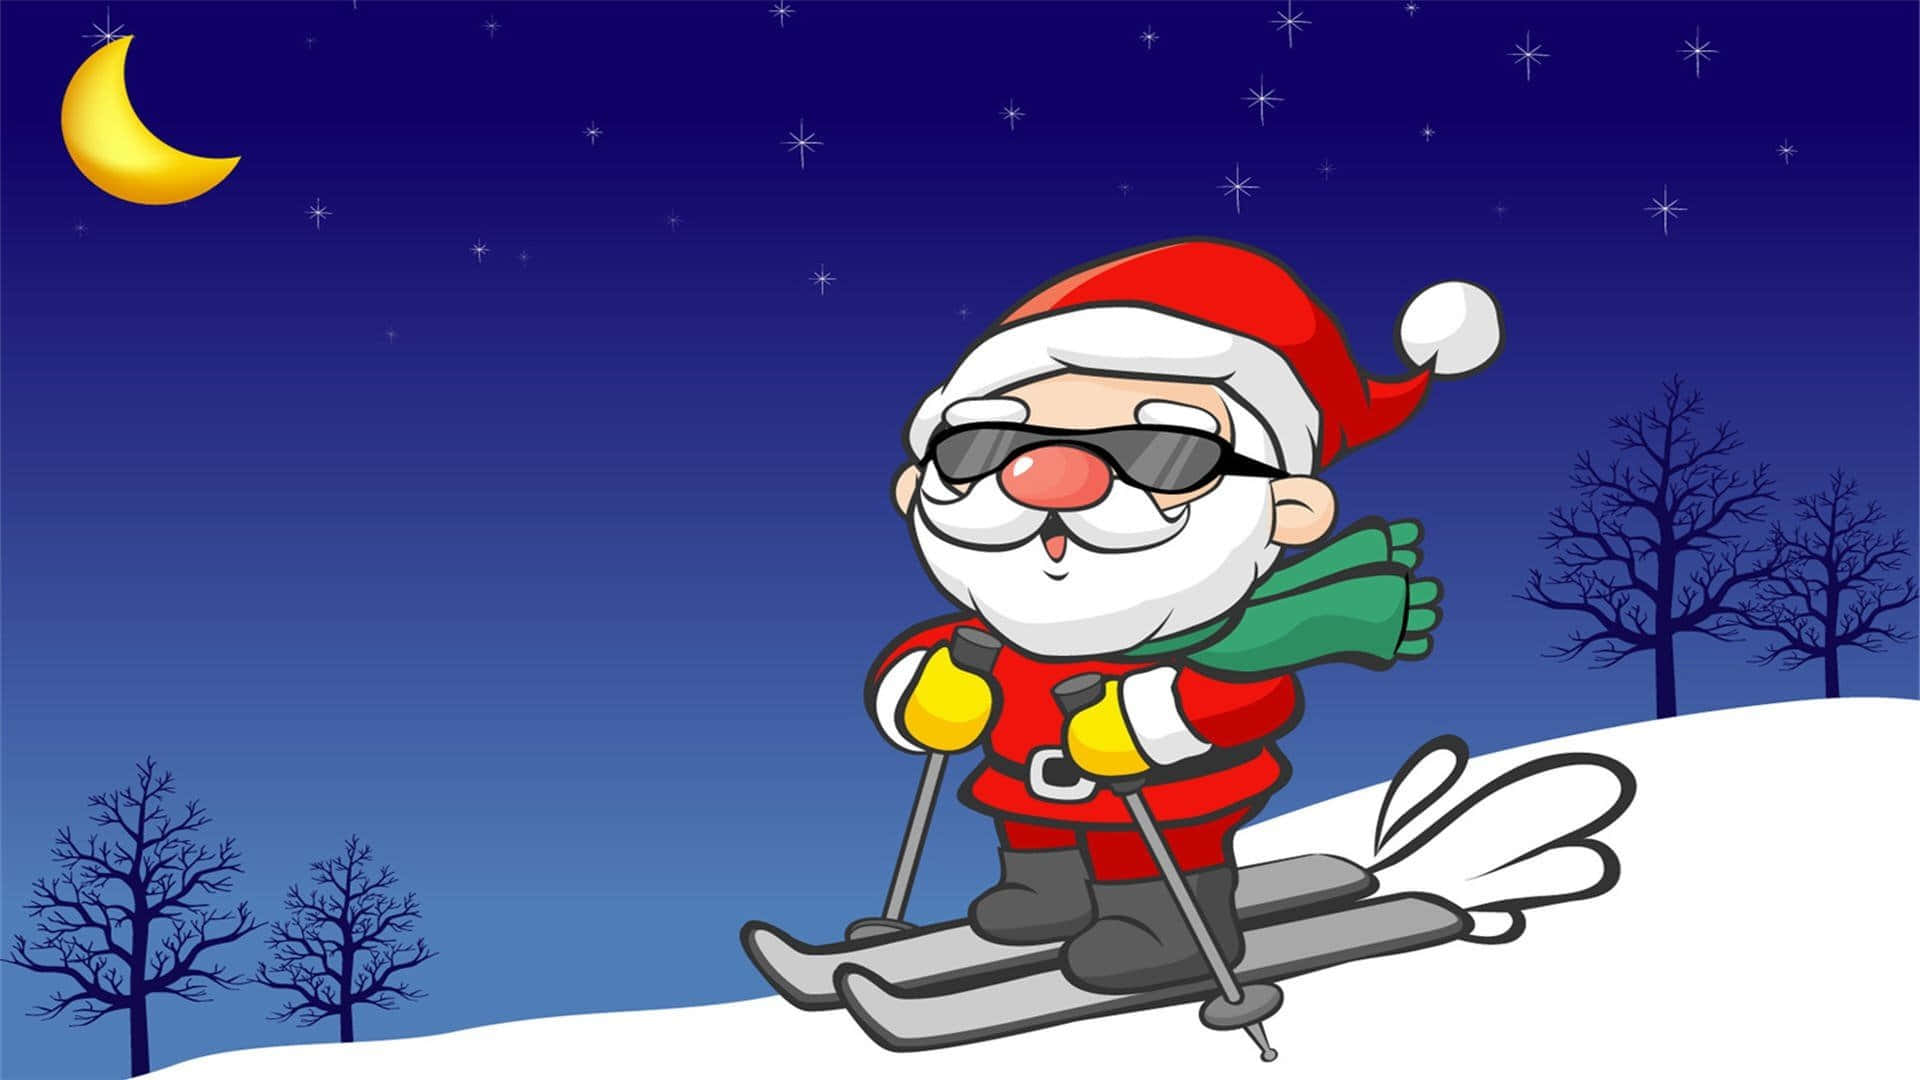 Witzigerweihnachts-zoom-hintergrund: Der Weihnachtsmann Beim Skifahren.